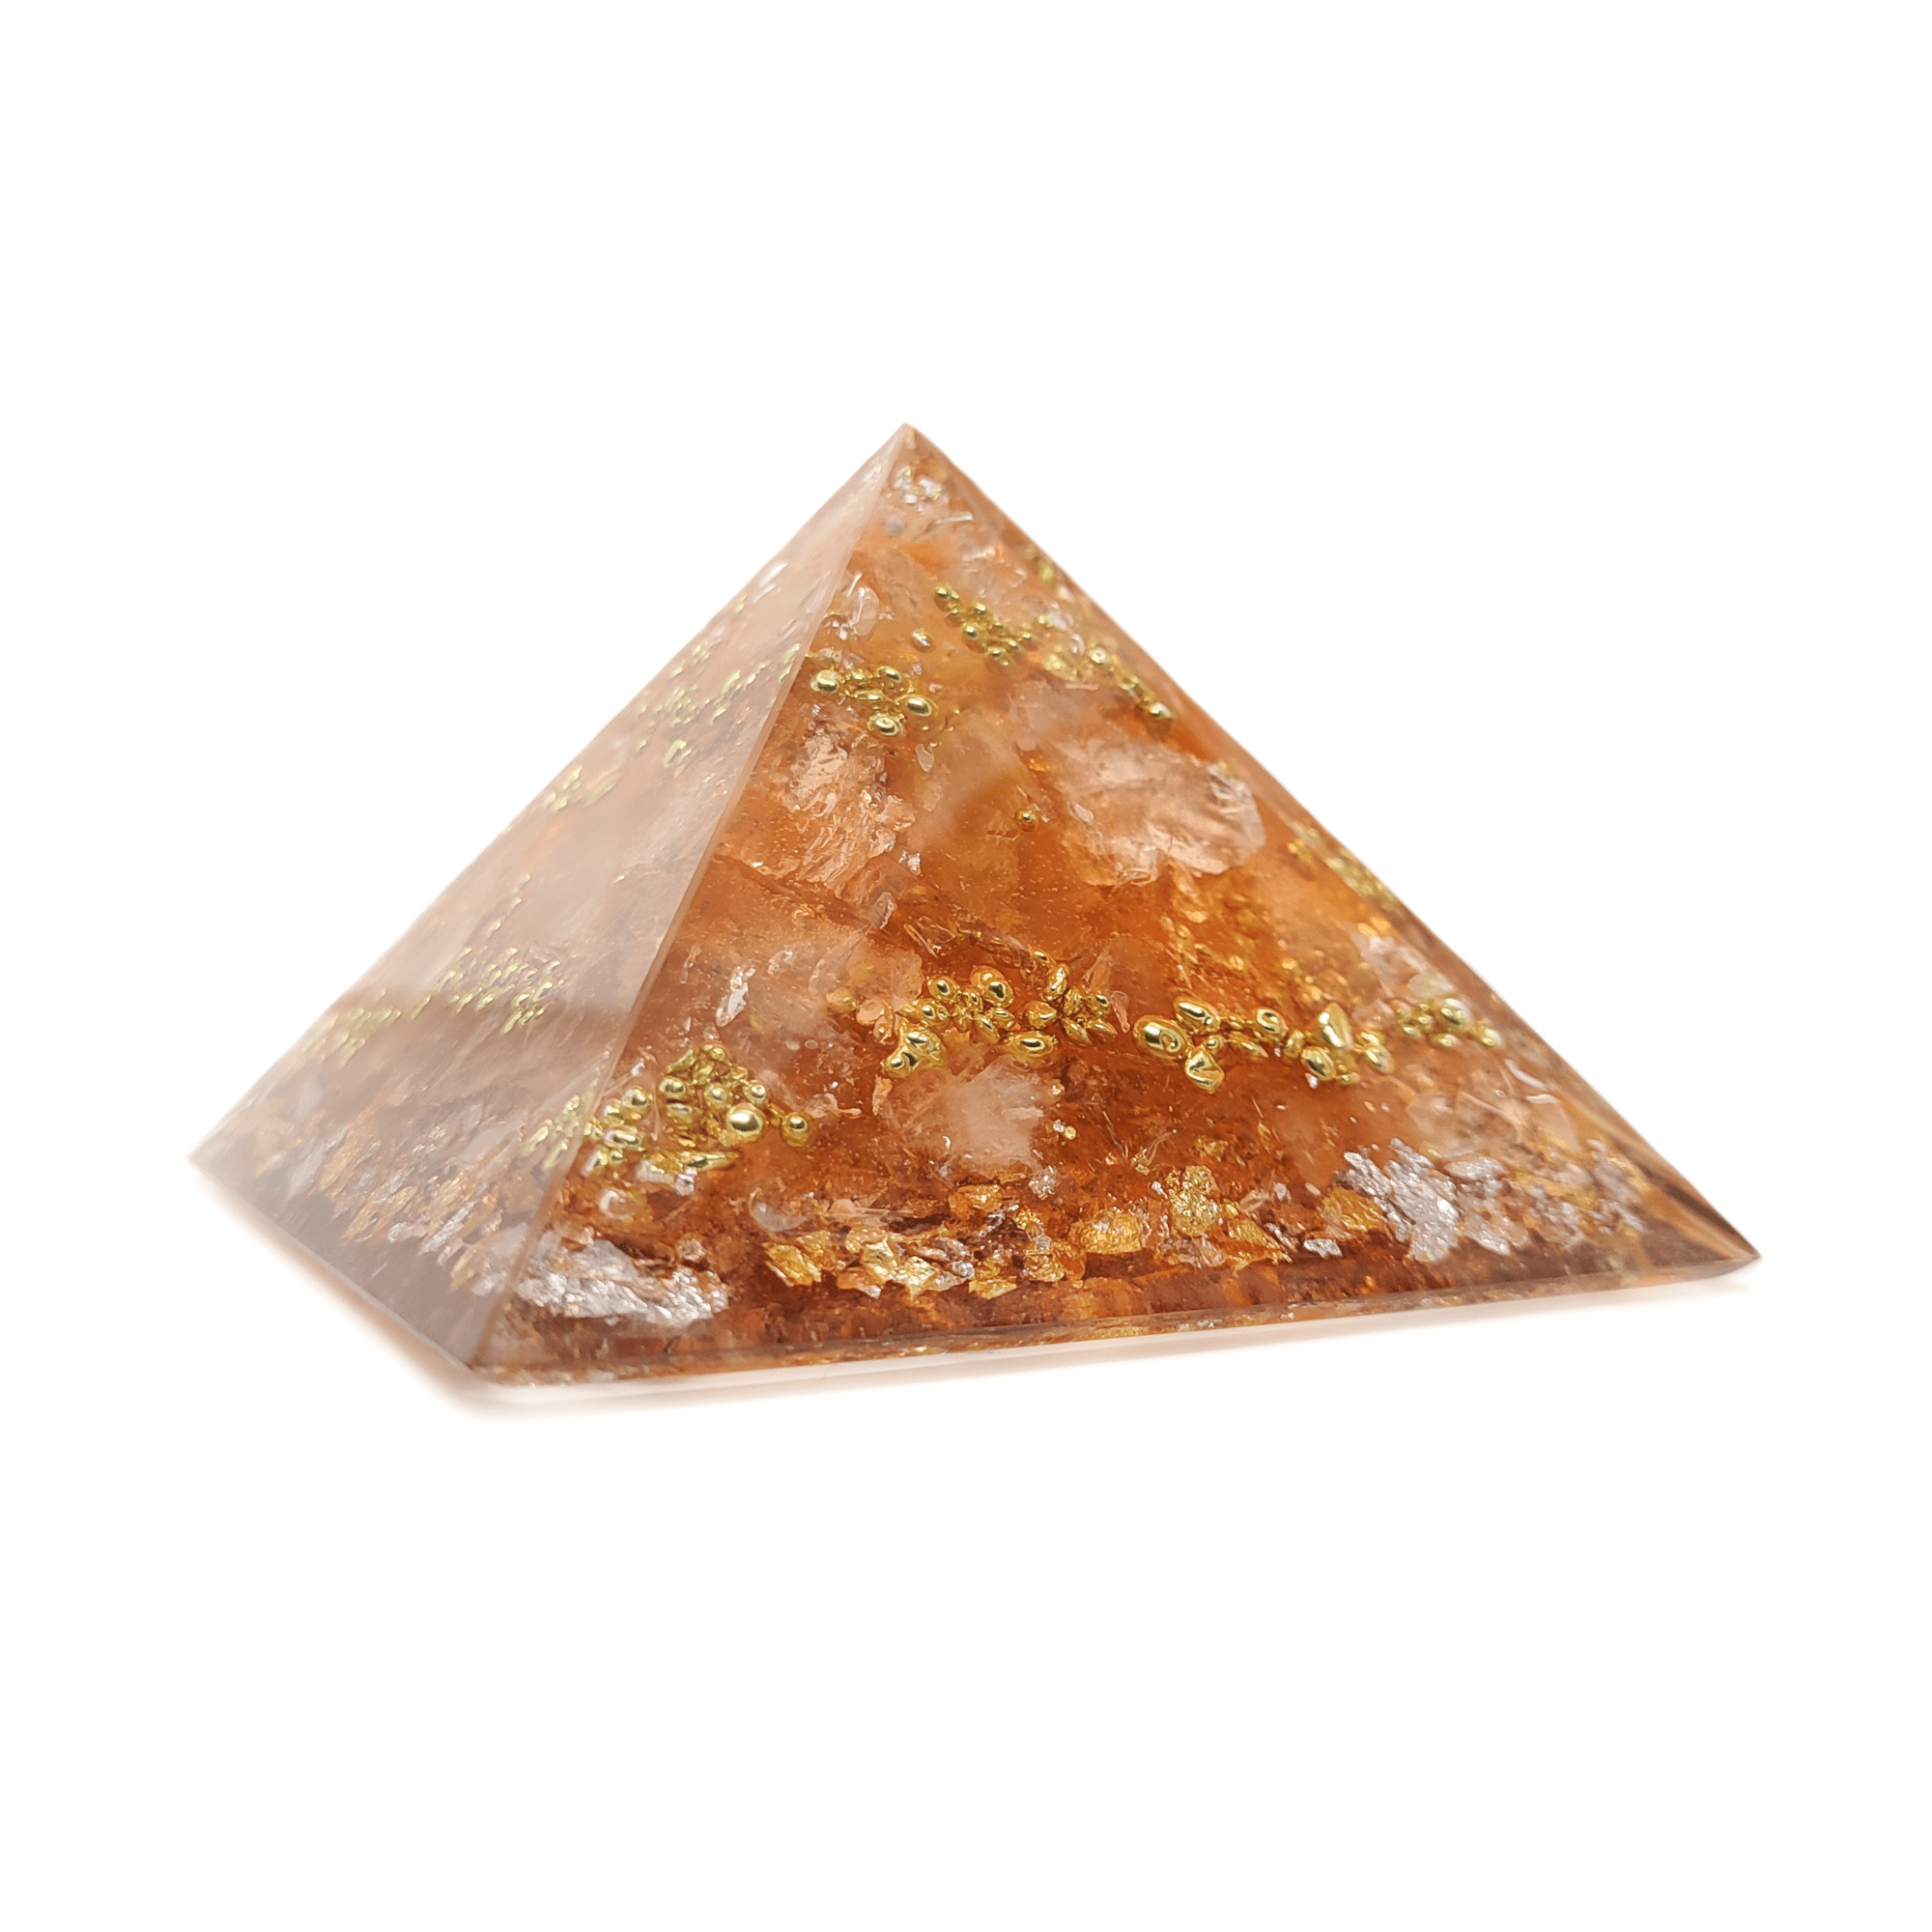 Aprikosenfarbene, sanft hell orangene Orgonit Pyramide mit goldenen & silbernen Elementen. Die Kristallstruktur von Bergkristall & Herkimer Diamant ist gut zu erkennen.